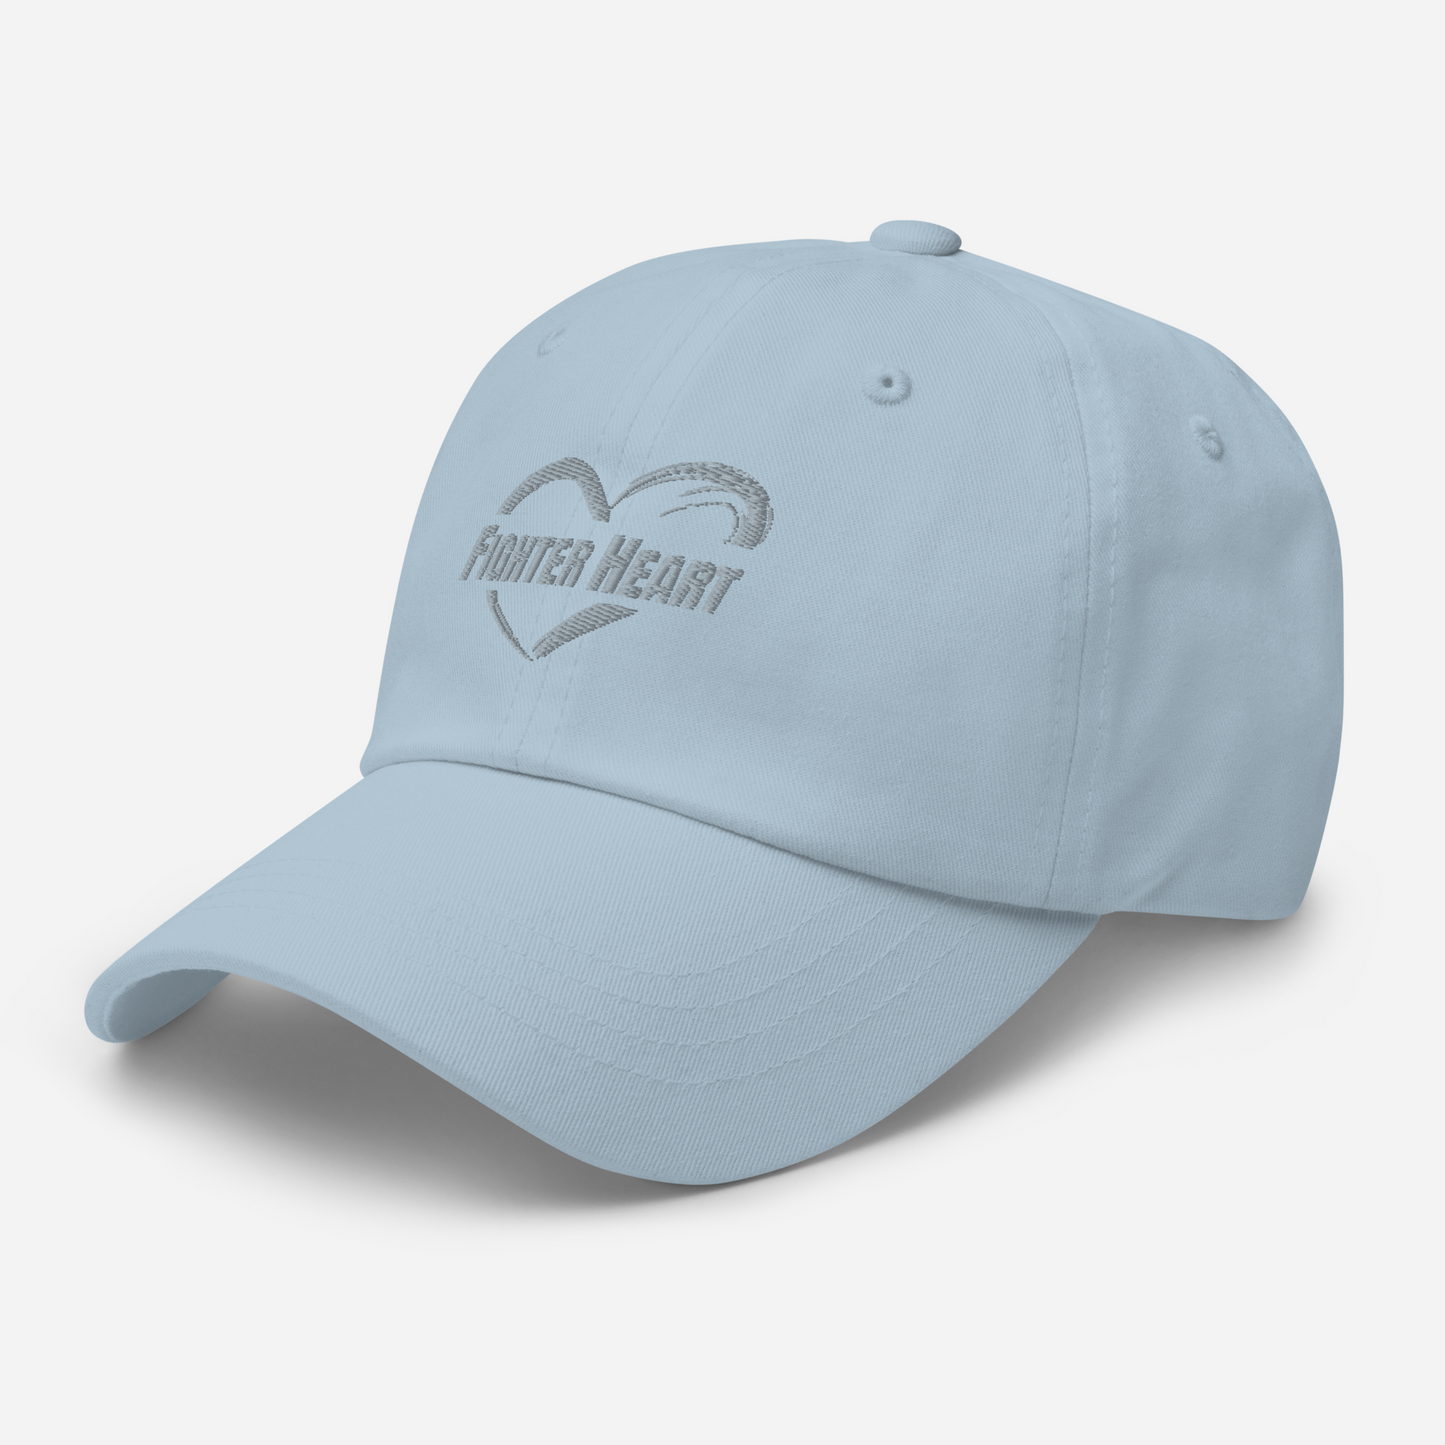 FighterHeart Logo Hat